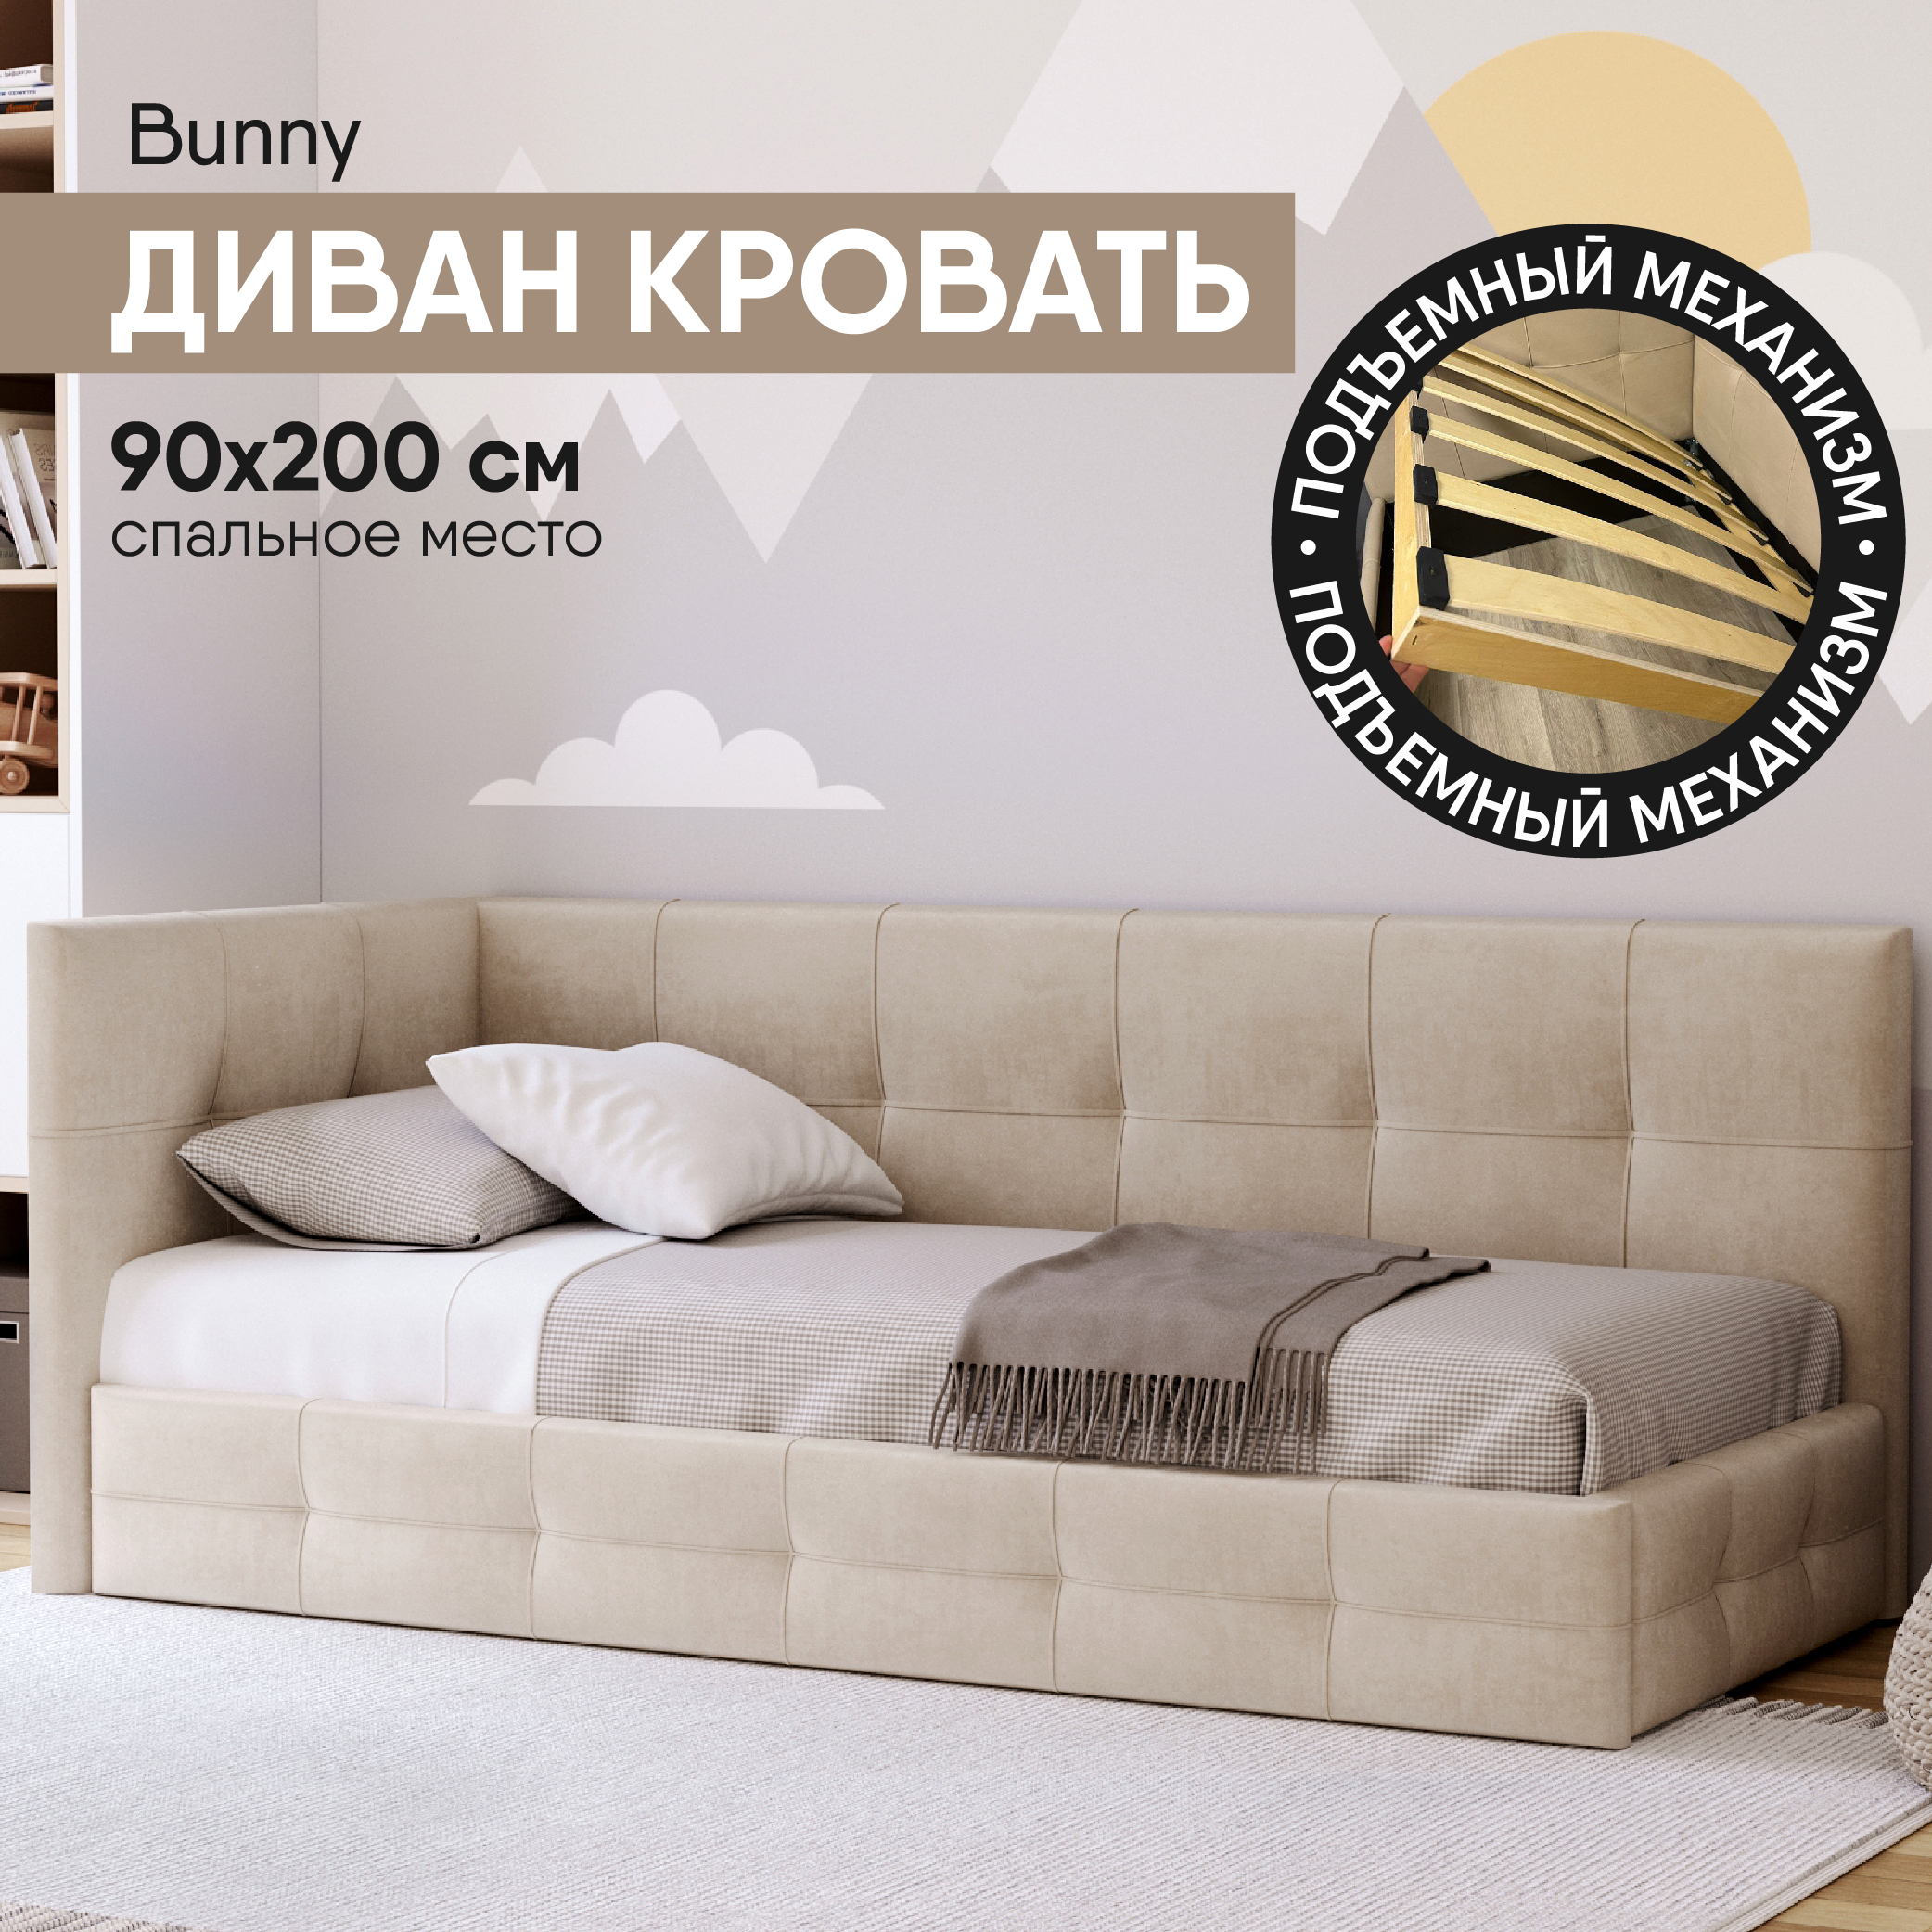 Диван кровать SleepAngel Bunny 90х200 см, с мягким изголовьем, бархат, бежевый